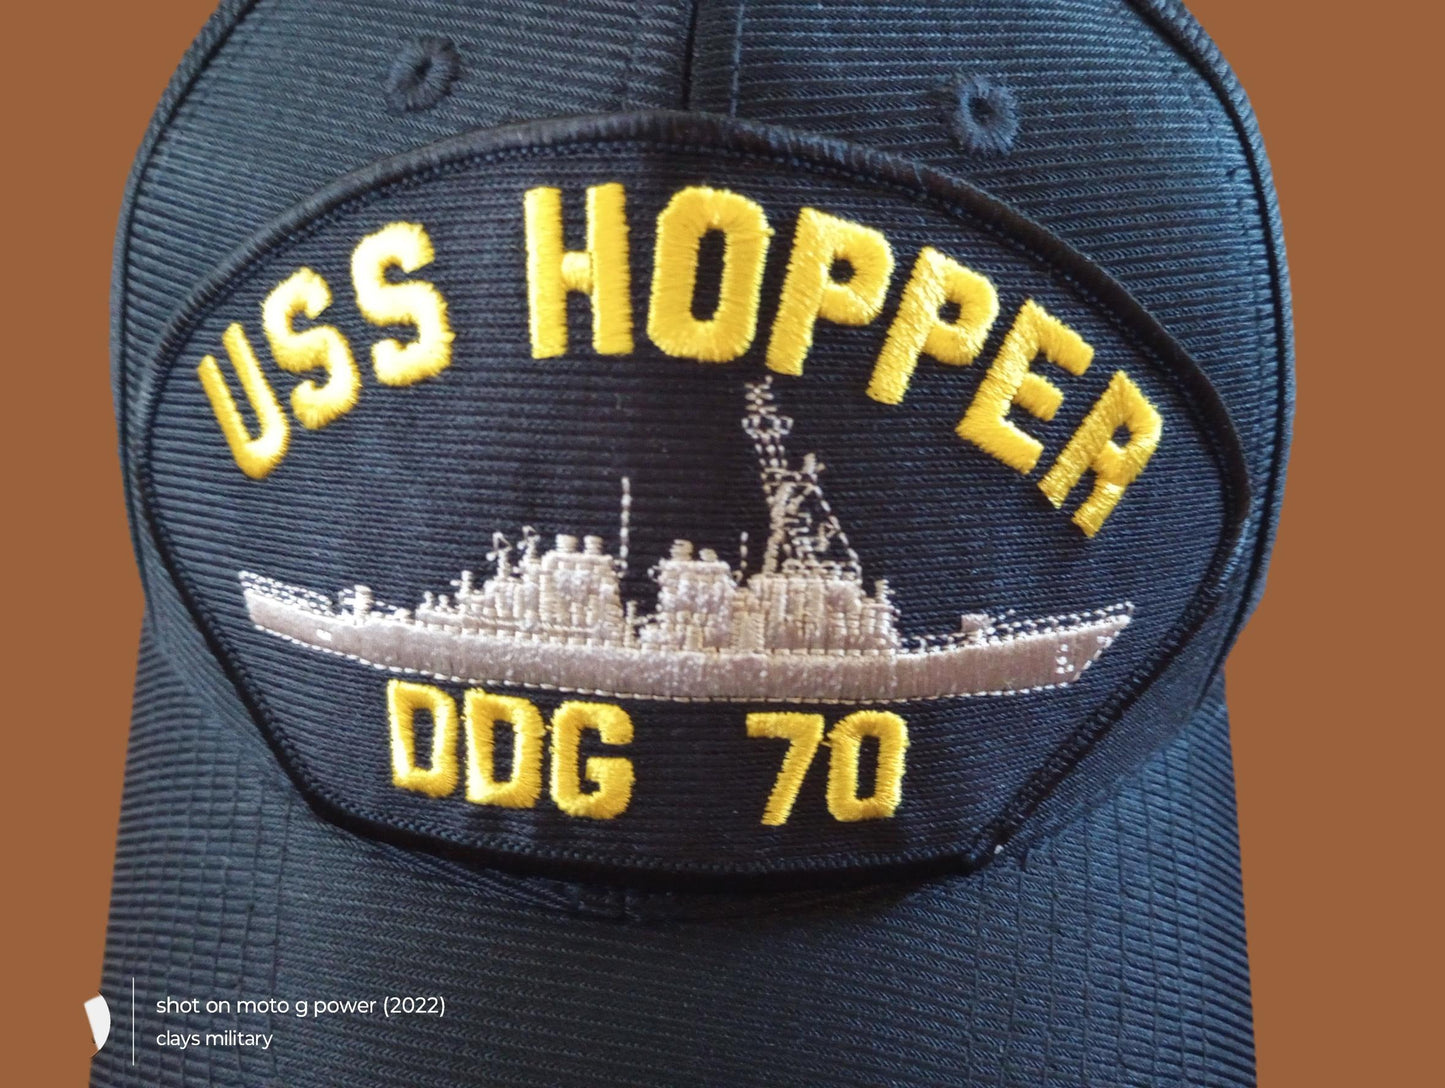 USS HOPPER DDG-70 NAVY SHIP HAT U.S MILITARY OFFICIAL BALL CAP U.S.A MADE